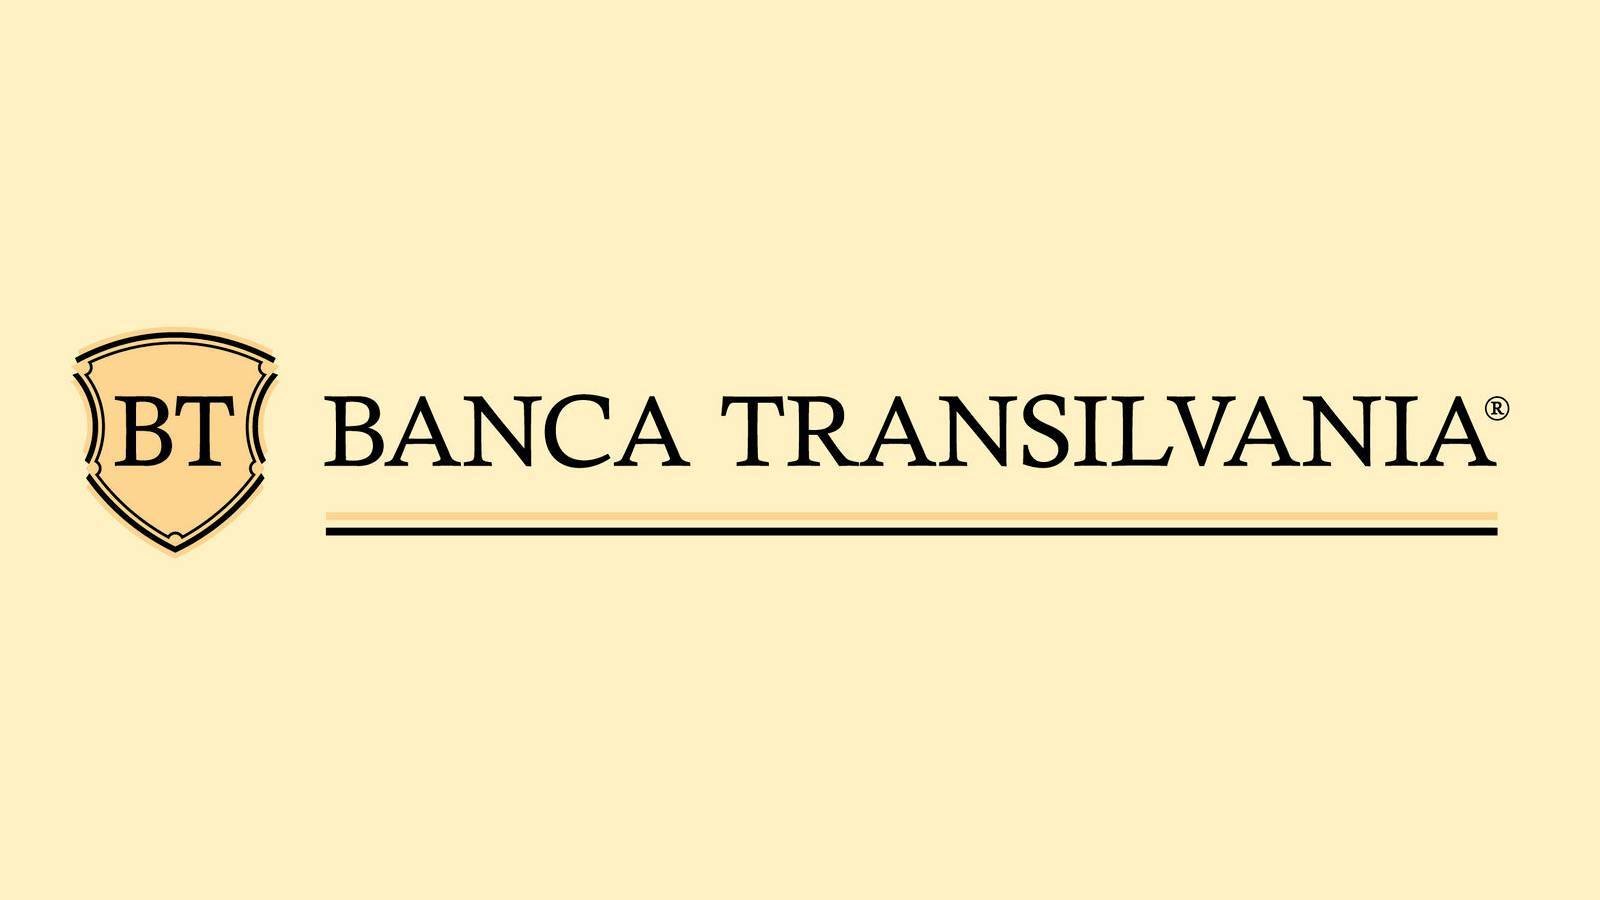 BANCA Transilvania Mesajul IMPORTANT Trebuie Stie Clientii